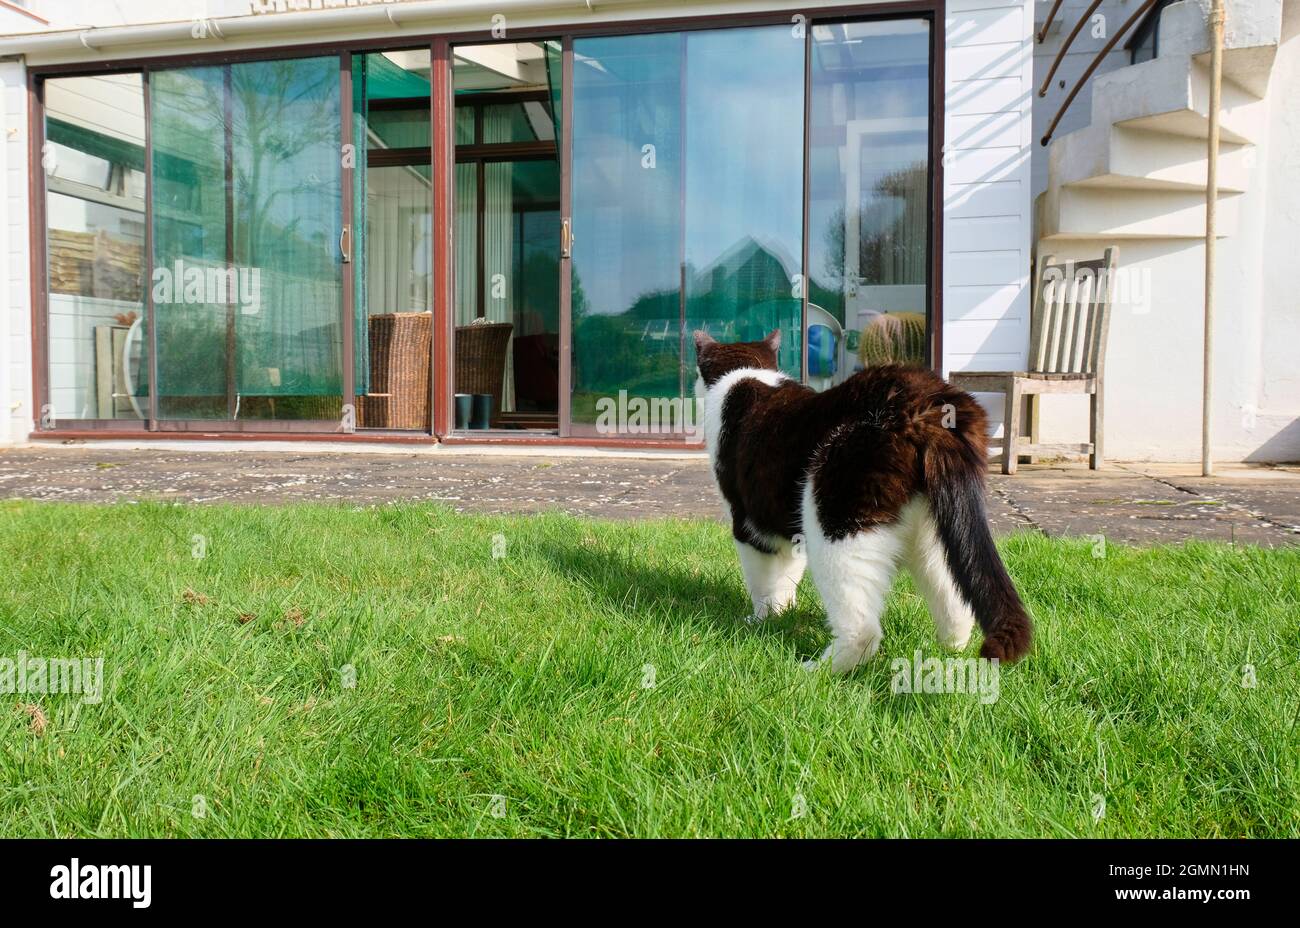 Gato blanco y negro hembra adulto (Felis catus) regresando a casa a través del jardín Foto de stock